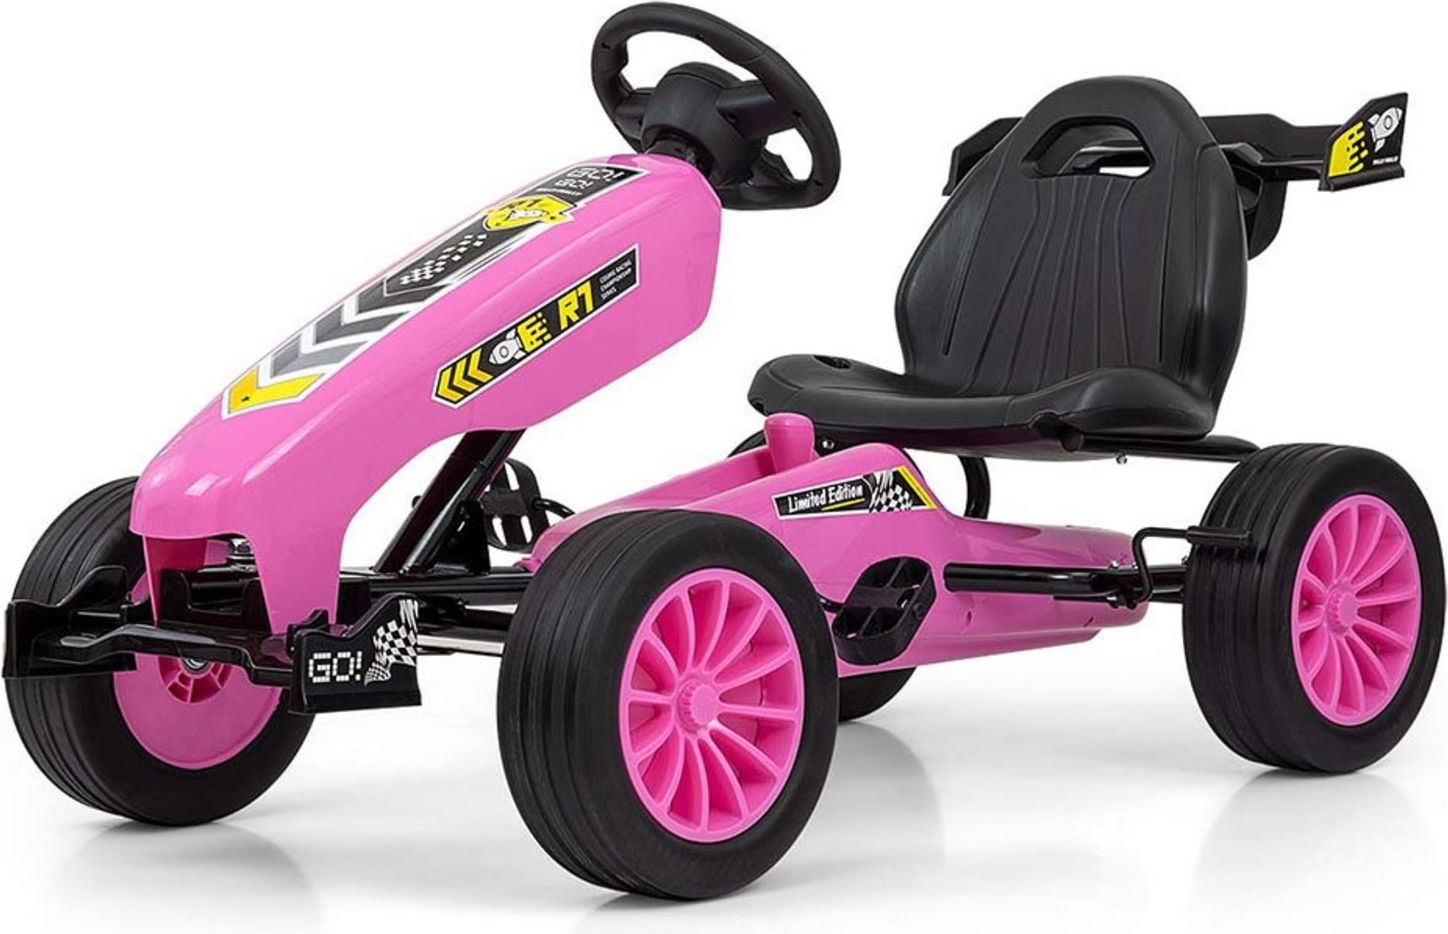 Dětská šlapací motokára Go-kart Milly Mally Rocket růžová - obrázek 1